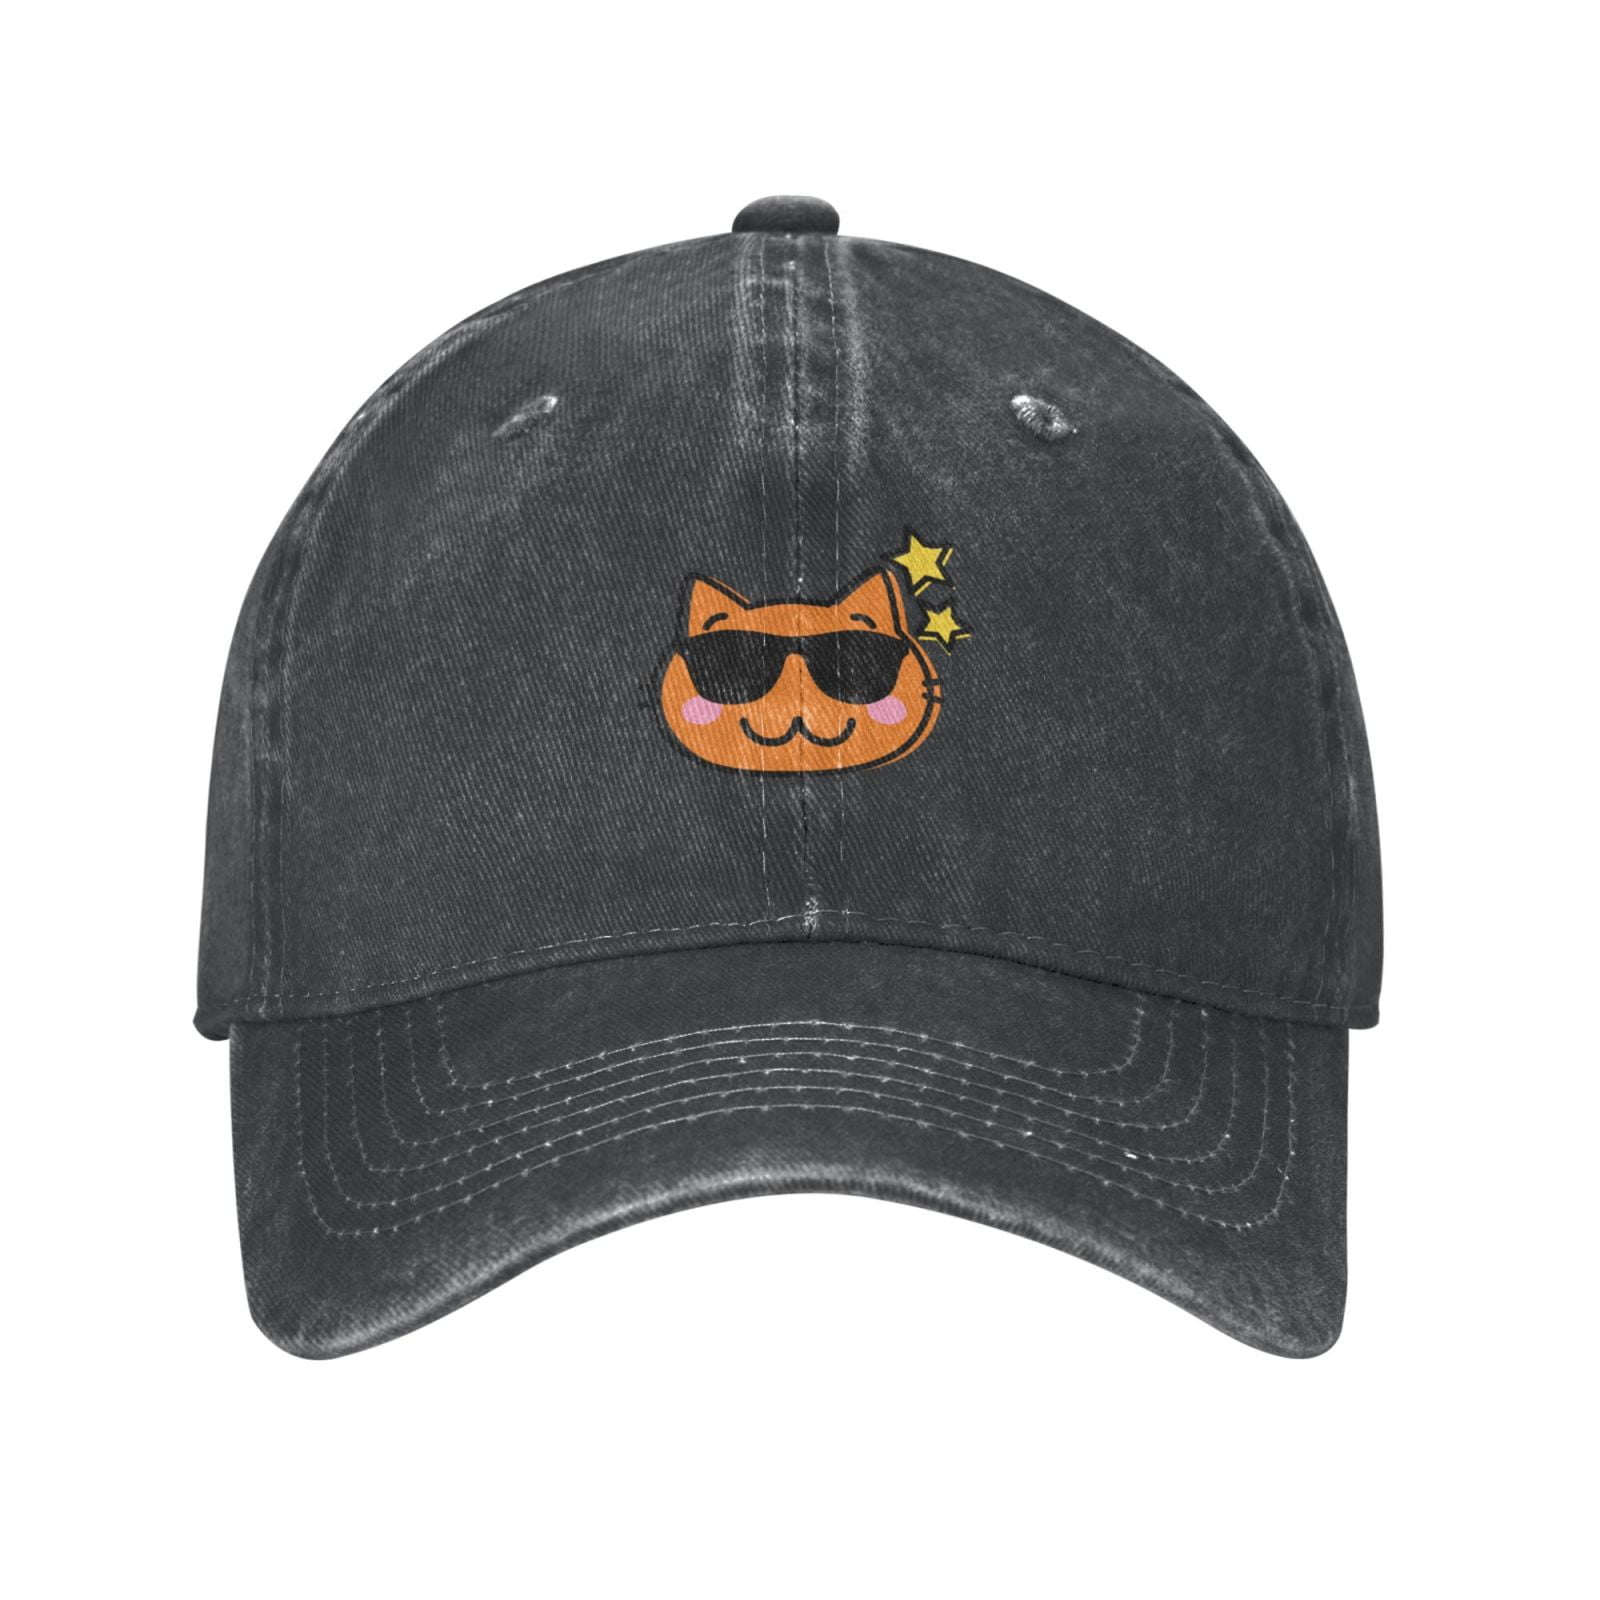 Mens Baseball Cap, Heather Hat Classic Adjustable Cartoon Happy Hat, Cowboy Cap Cat- Outdoor Brim Casual Sports Curved Deep 